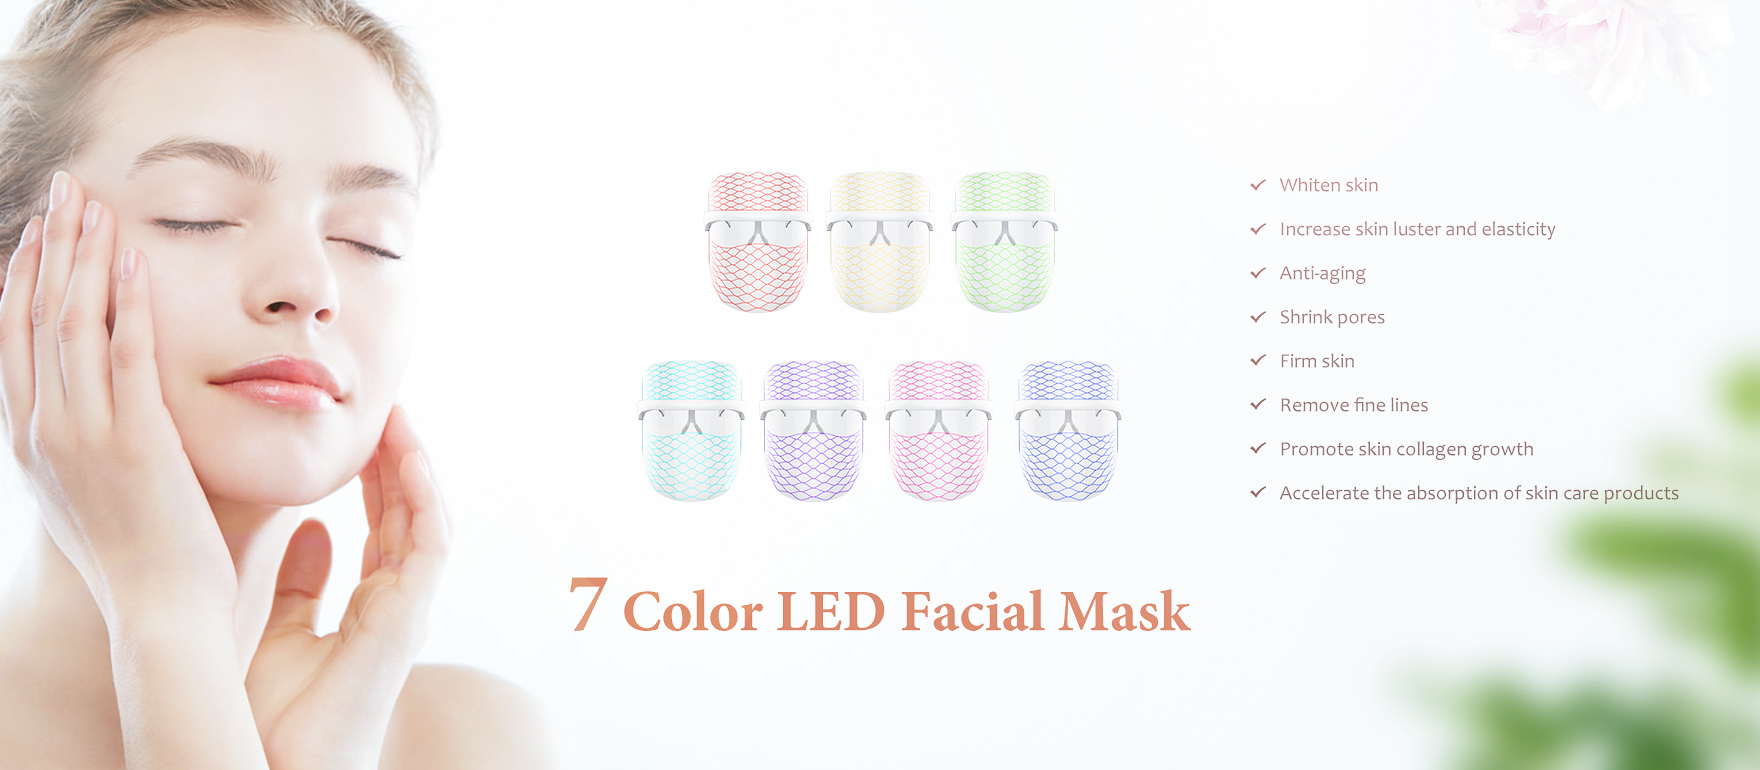 Led Facial Masks, Led Face Mask, Led Light Mask - Liangji